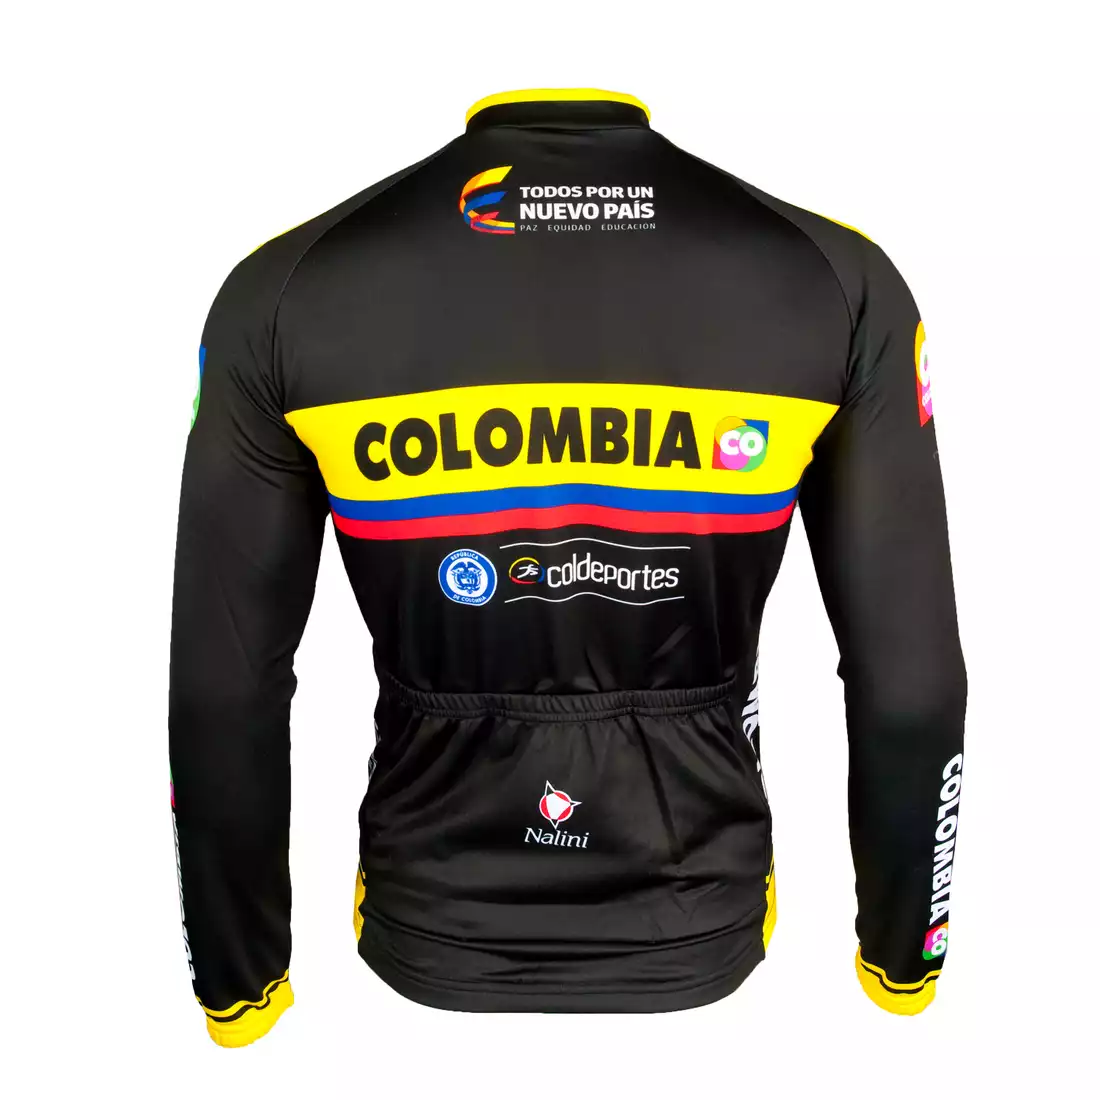 COLOMBIA 2015 bluza rowerowa